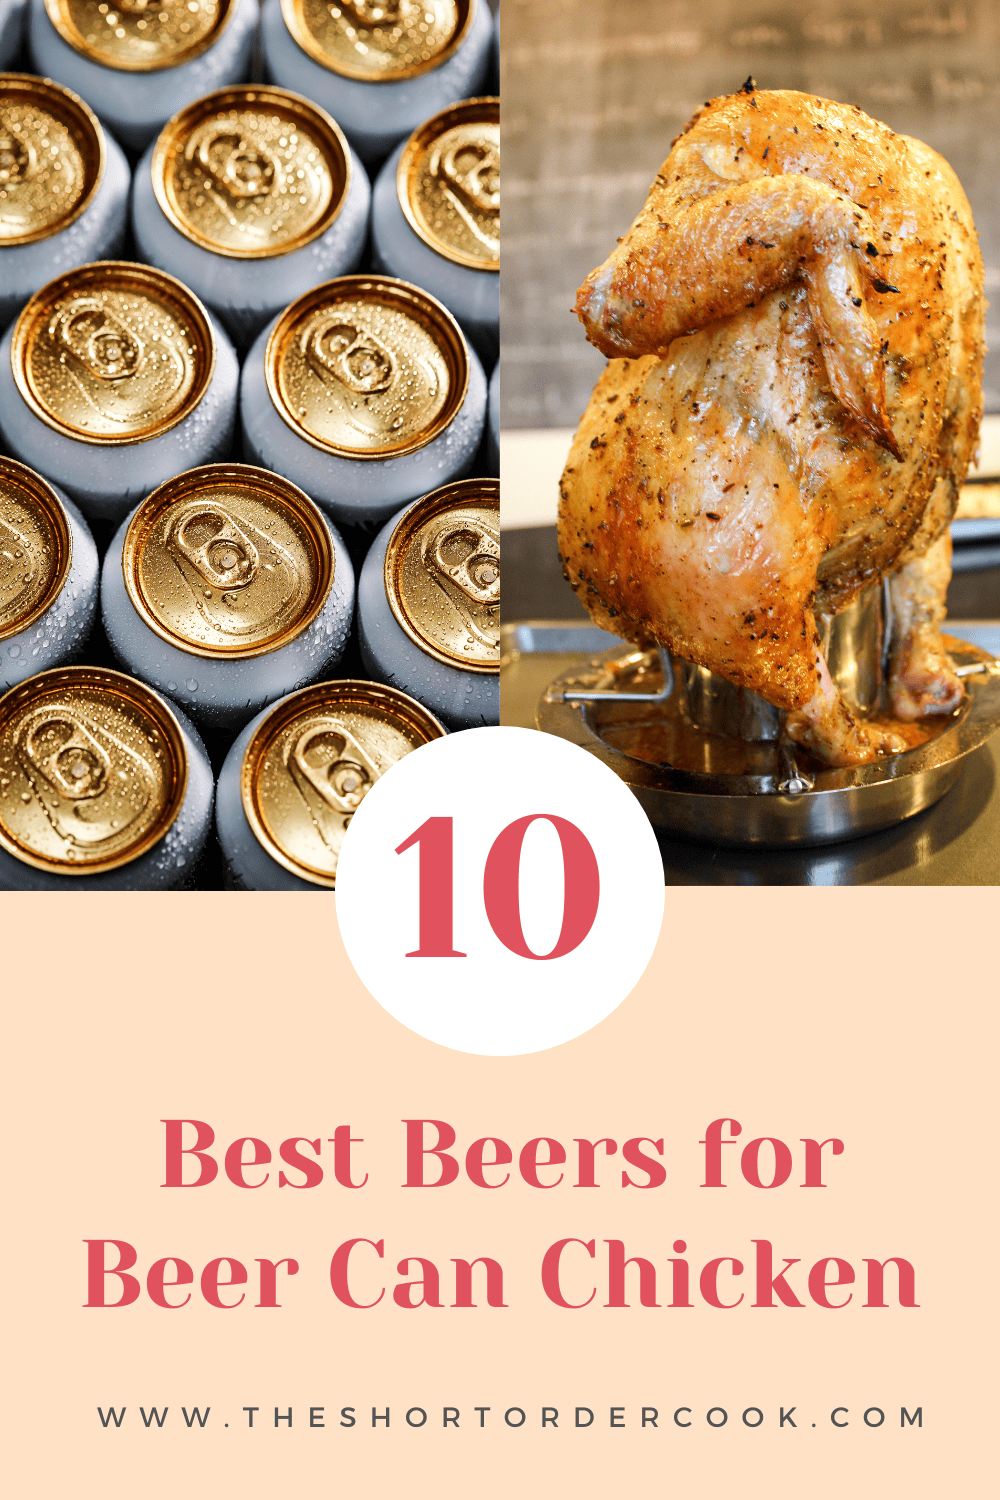 Top 10 Best Beers for Beer Can Chicken